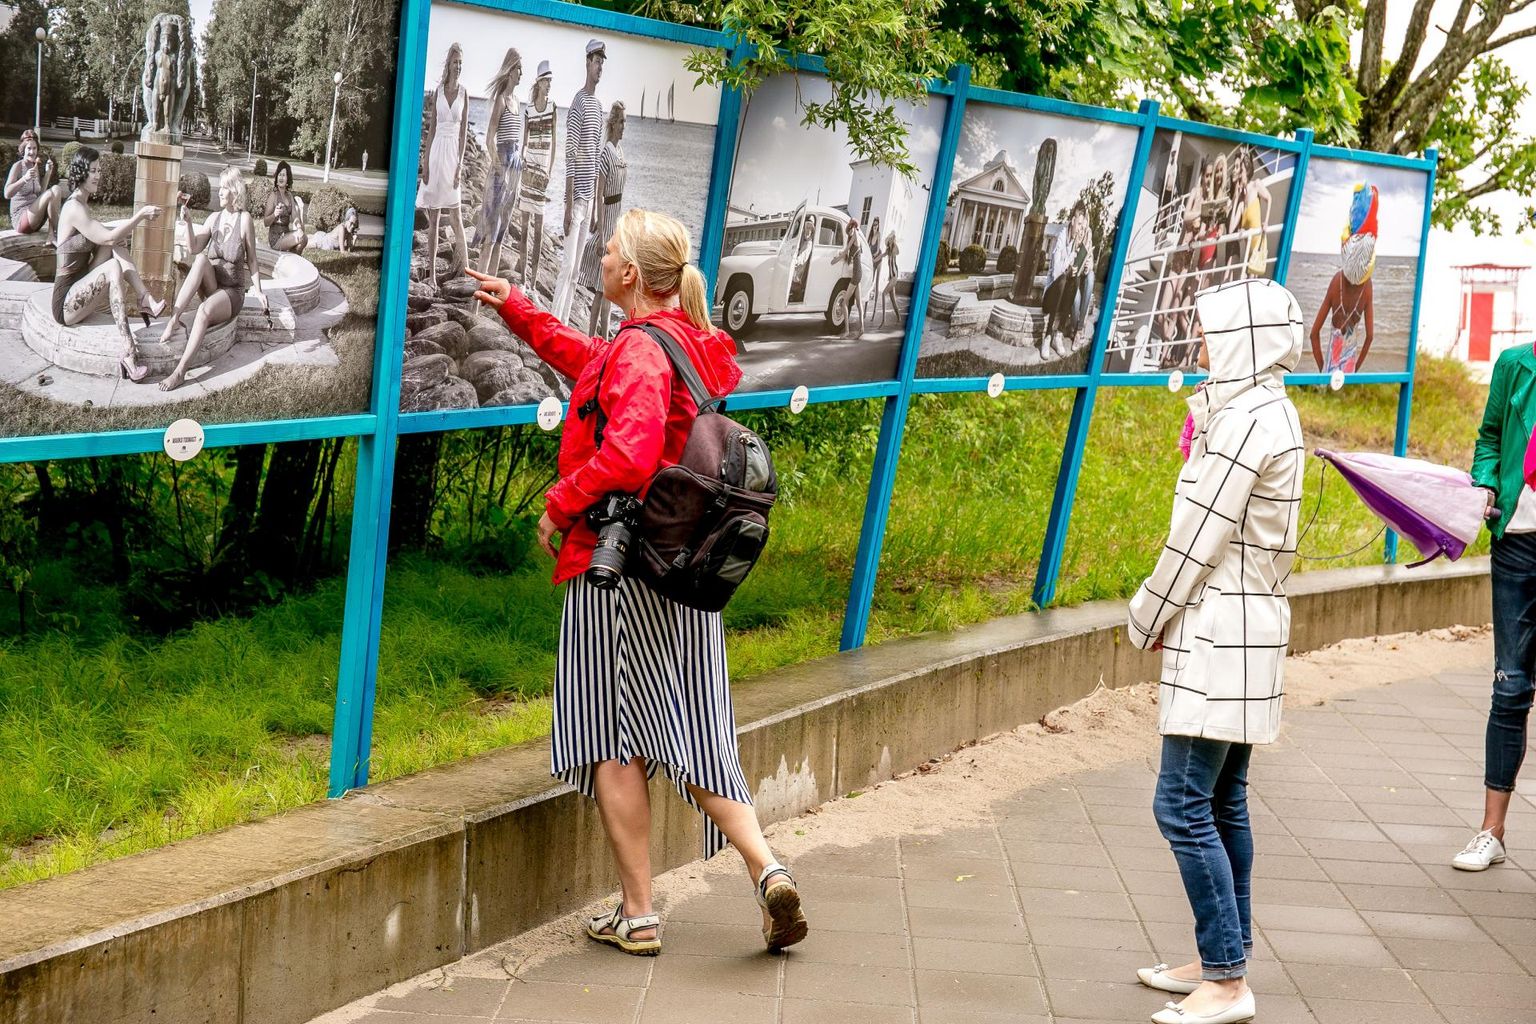 Pärnu rannas, ajaloolise mudaravila hoobe taga avati kuurorti 180 aasta juubeli tähistamiseks fotonäitus “Pärnu – tänapäeva kuurort”, kus on eksponeeritud on fotokunstirühmituse F8 fotograafide kümme suuremõõtmelist pilti.